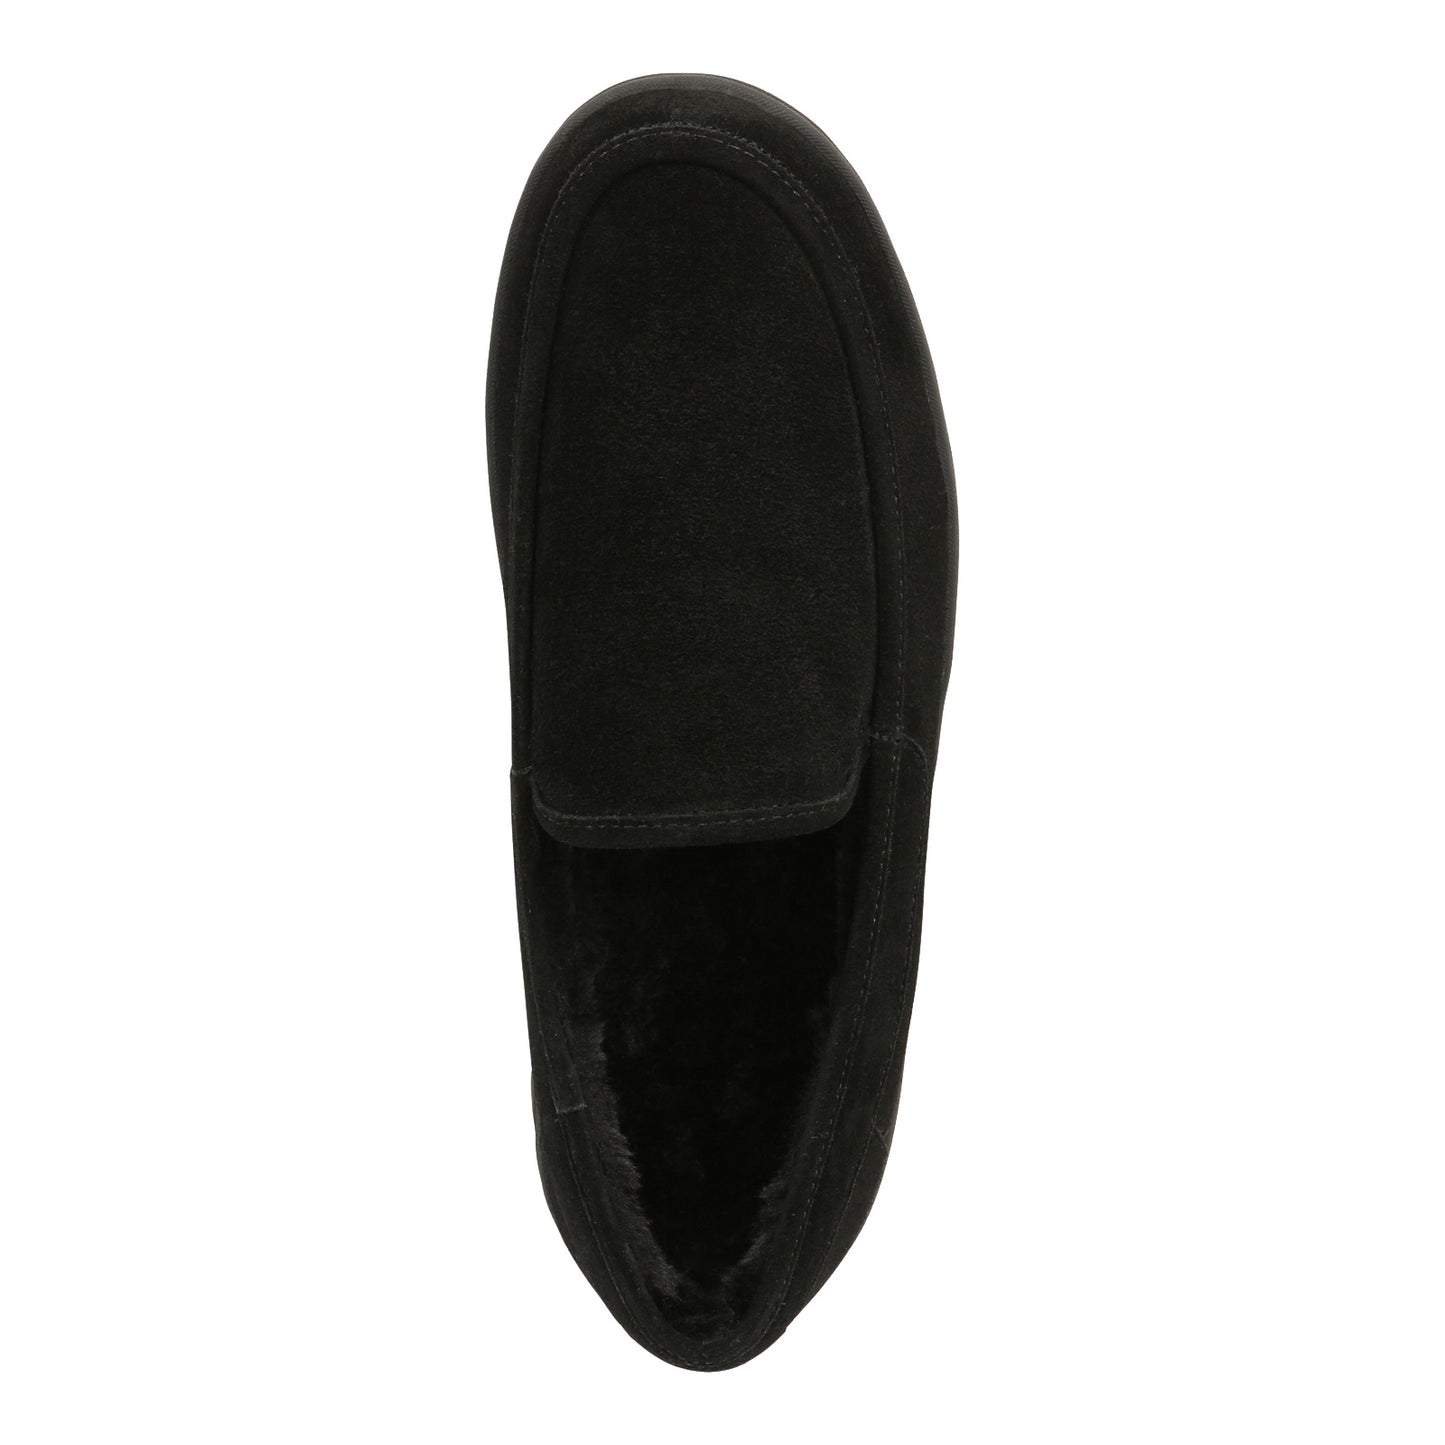 Peltz Shoes  Men's Vionic Gustavo Slipper black I2021L1001